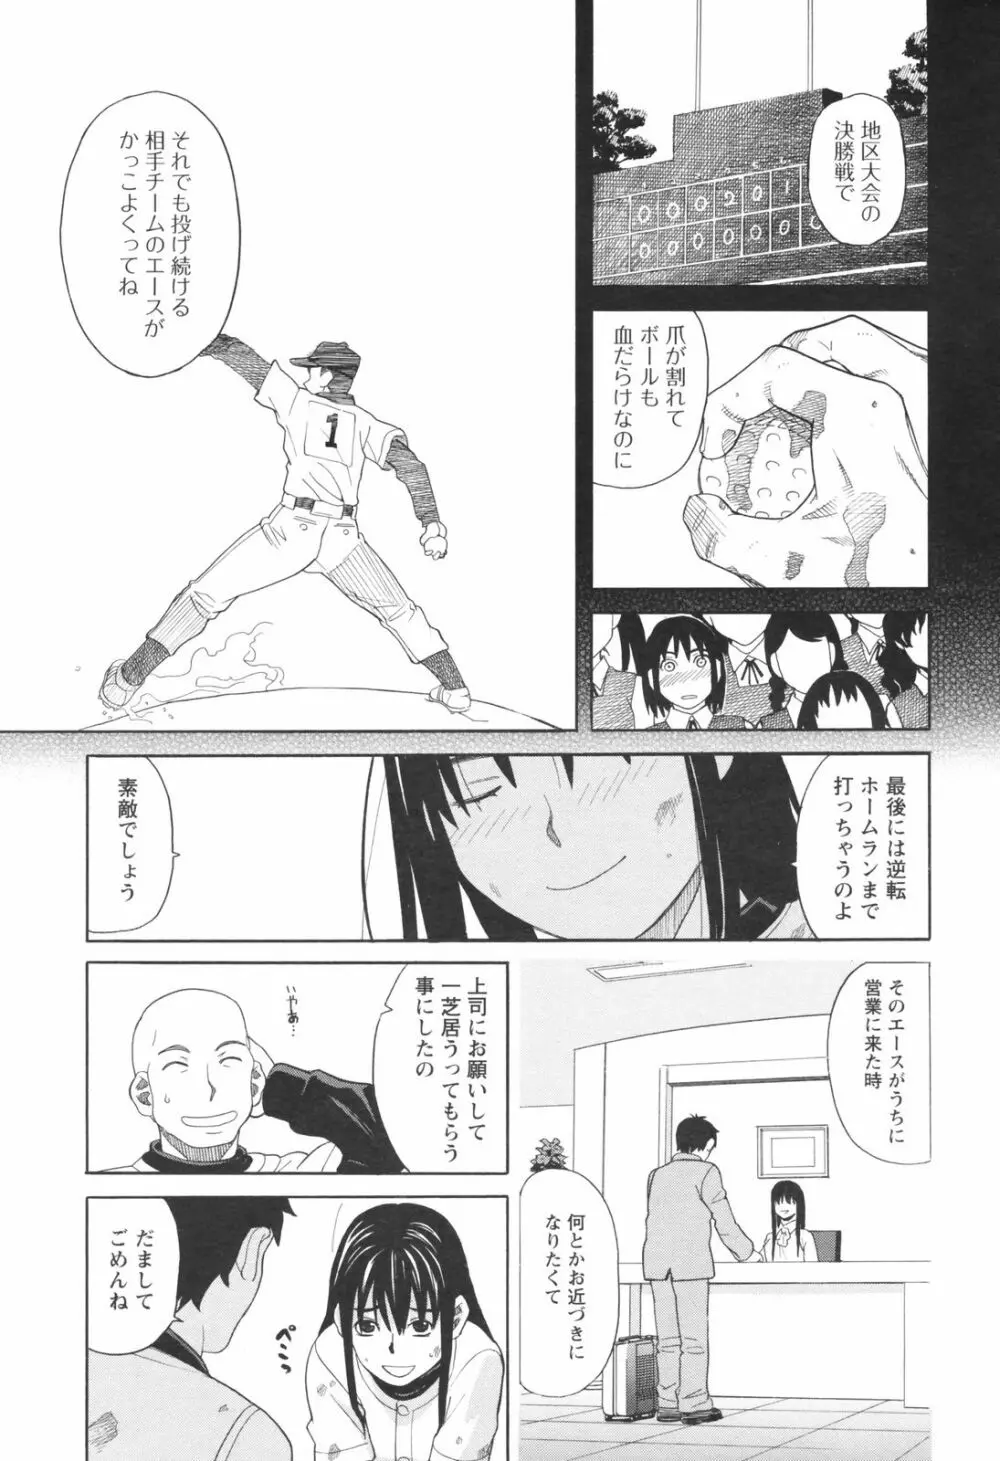 メンズヤングスペシャルIKAZUCHI雷 Vol.5 2008年3月号増刊 37ページ